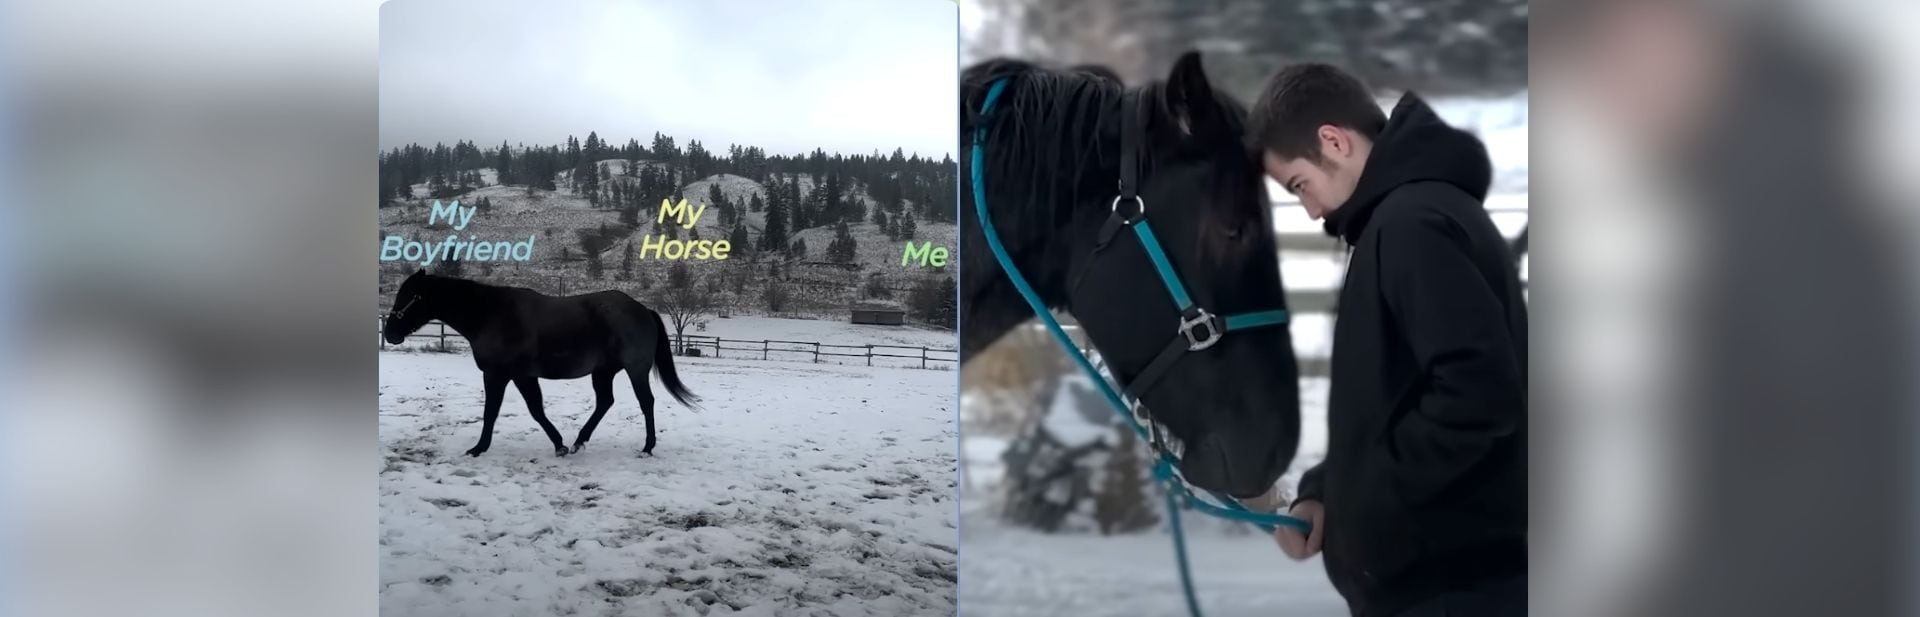 Mom’s Boyfriend Steals Horse’s Heart at First Glance in a Heartwarming Twist